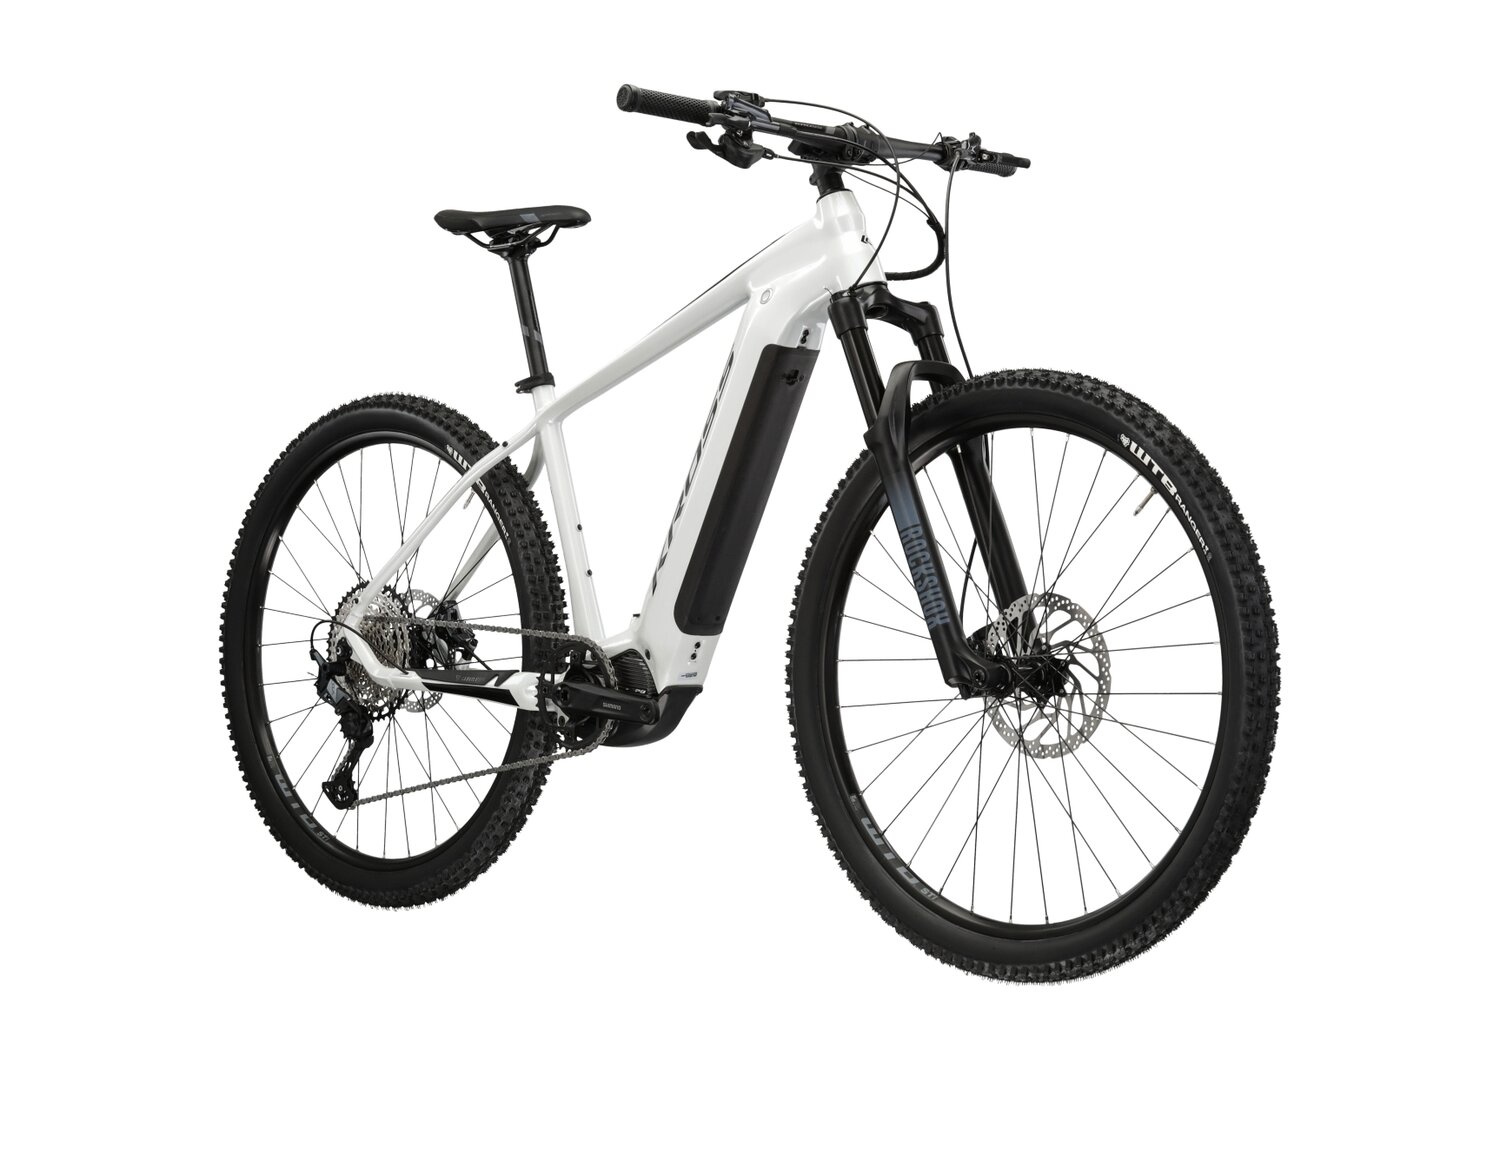  Elektryczny rower górski Ebike MTB XC KROSS Level Boost 3.0 630 Wh na aluminiowej ramie w kolorze perłowym wyposażony w osprzęt Shimano i napęd elektryczny Shimano 